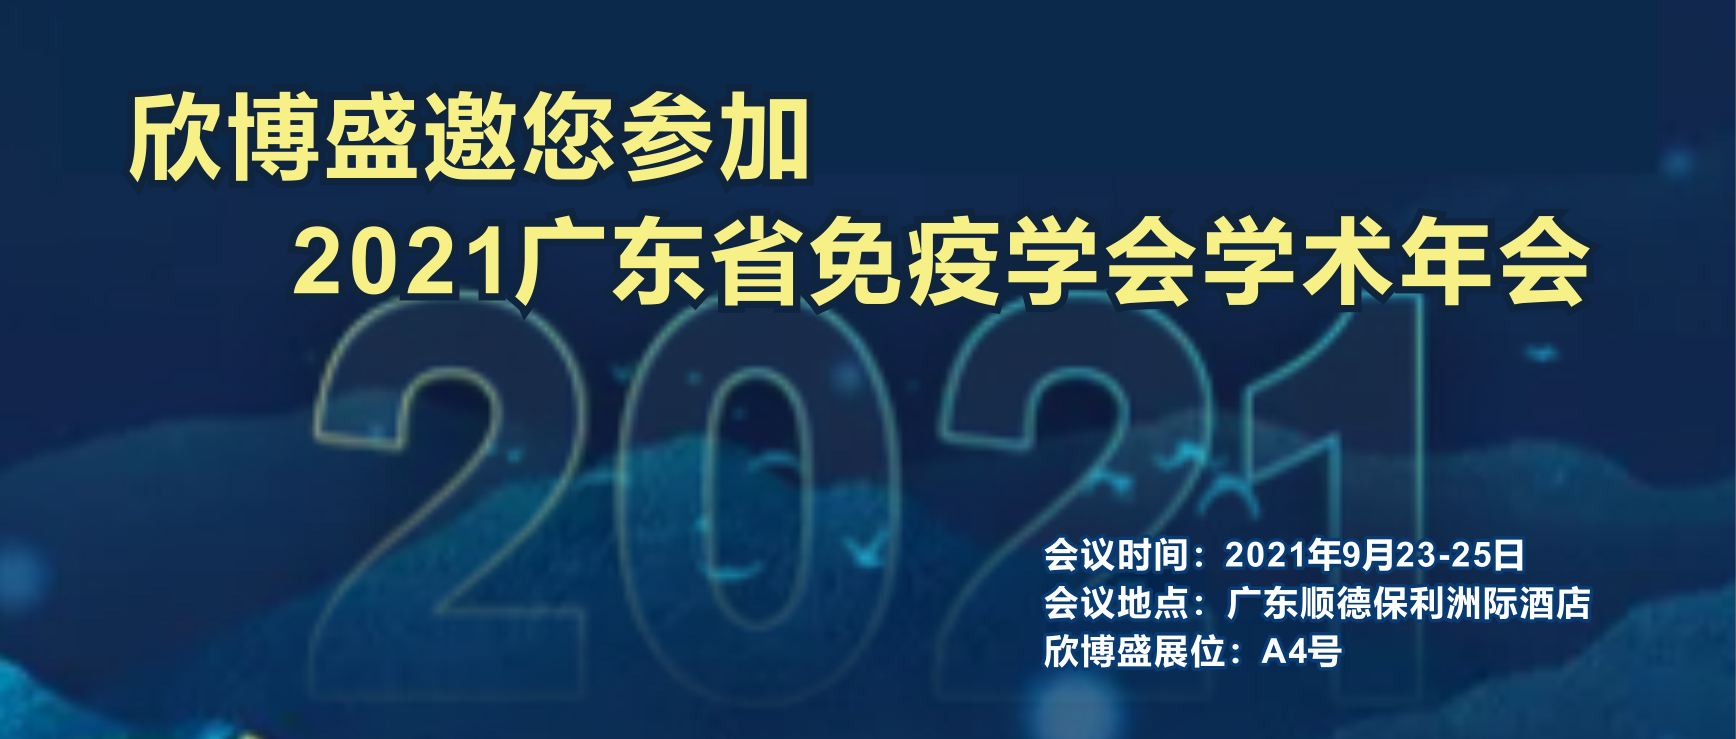 欣博盛邀您参加2021广东省免疫学会学术年会